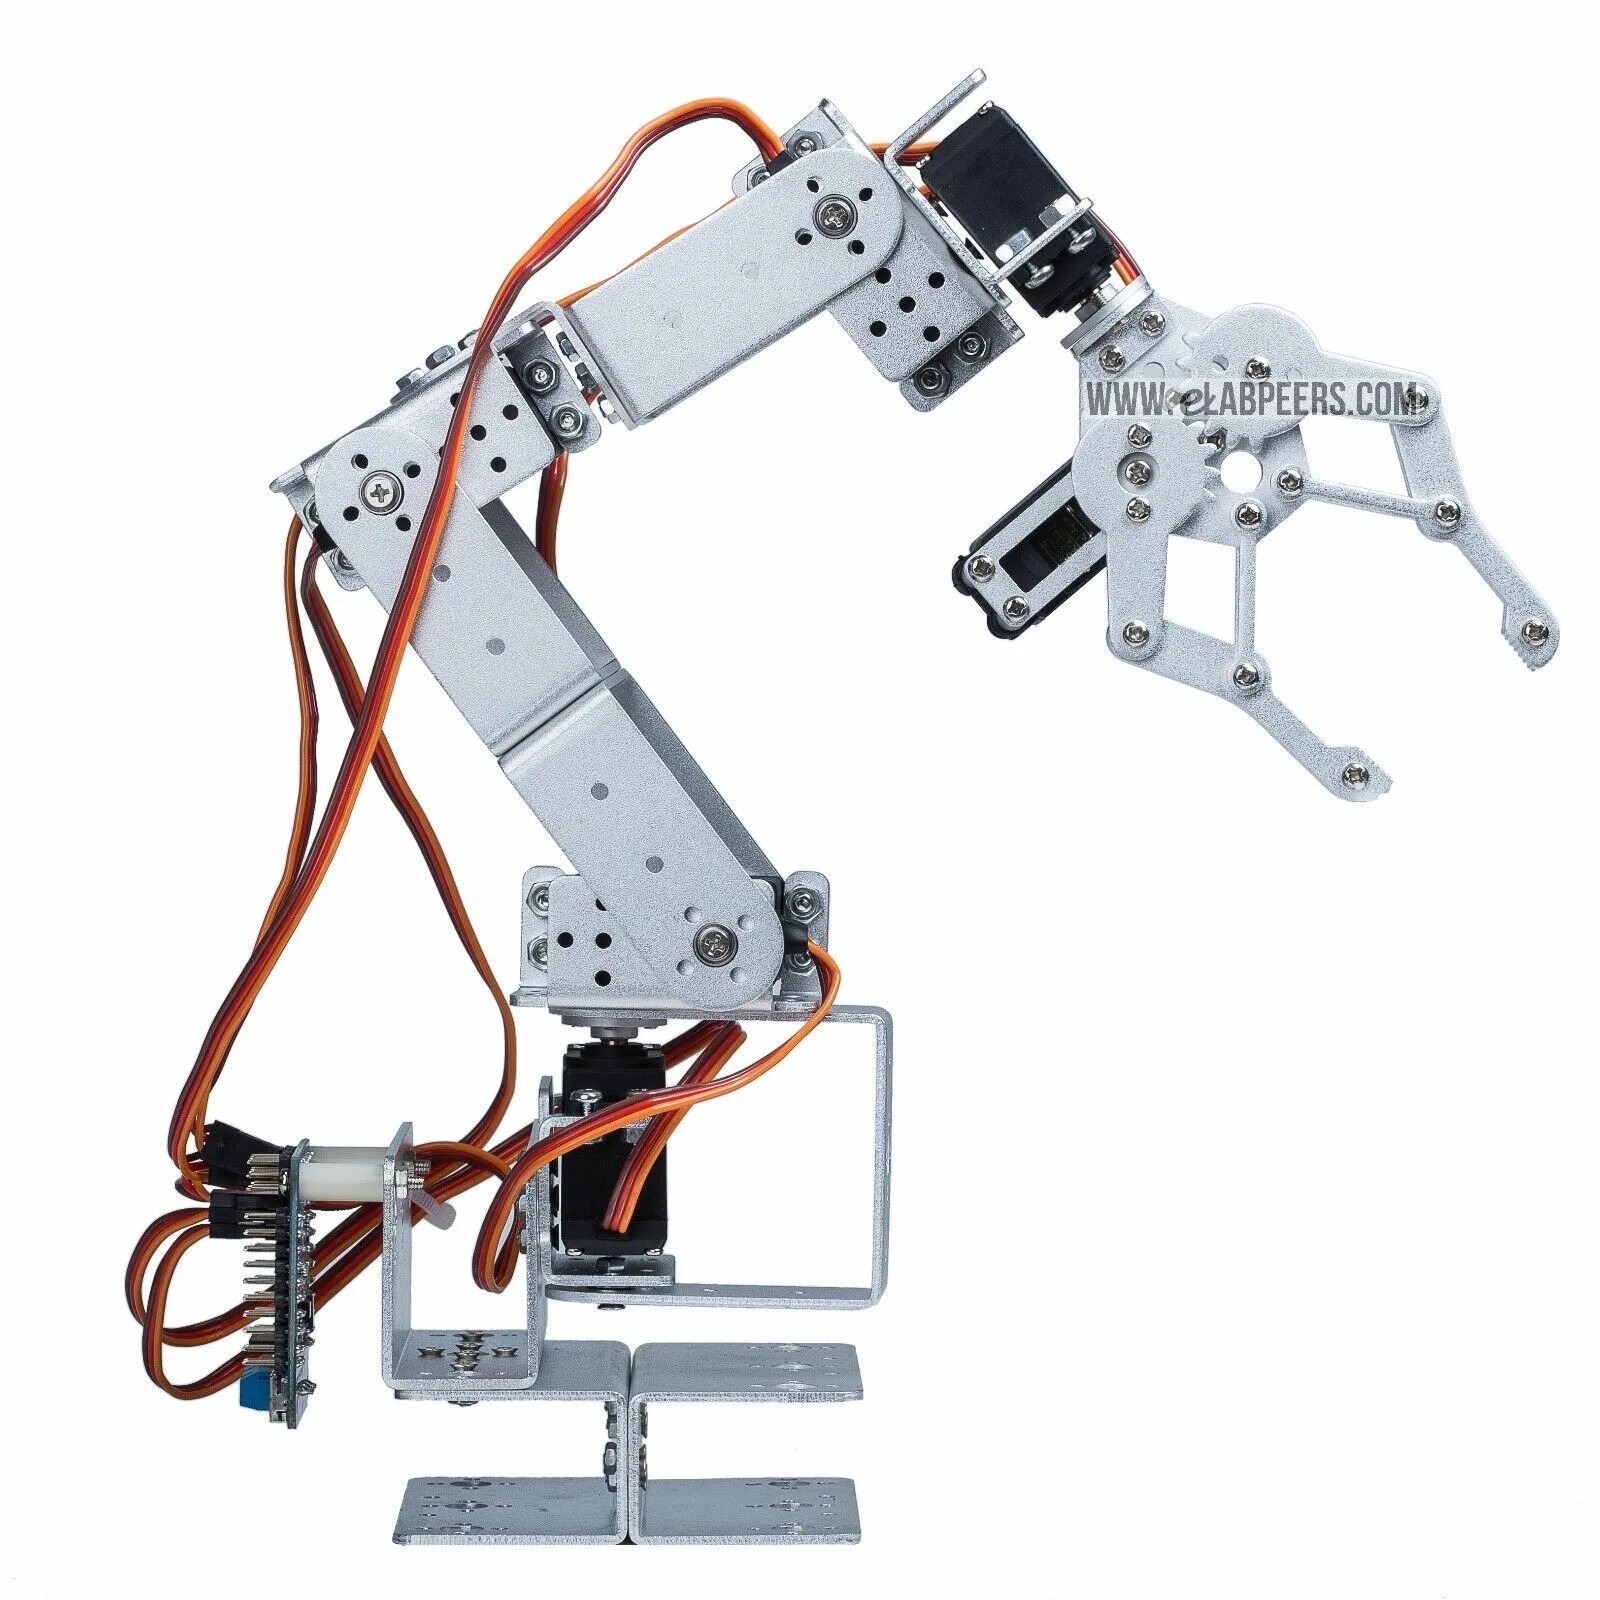 Робот 6dof Arduino. Робот манипулятор на сервоприводах mg996r 3d модель. Робот манипулятор mg996r ds3115. Робот-манипулятор LD-tg1400-6. Купить роборуку